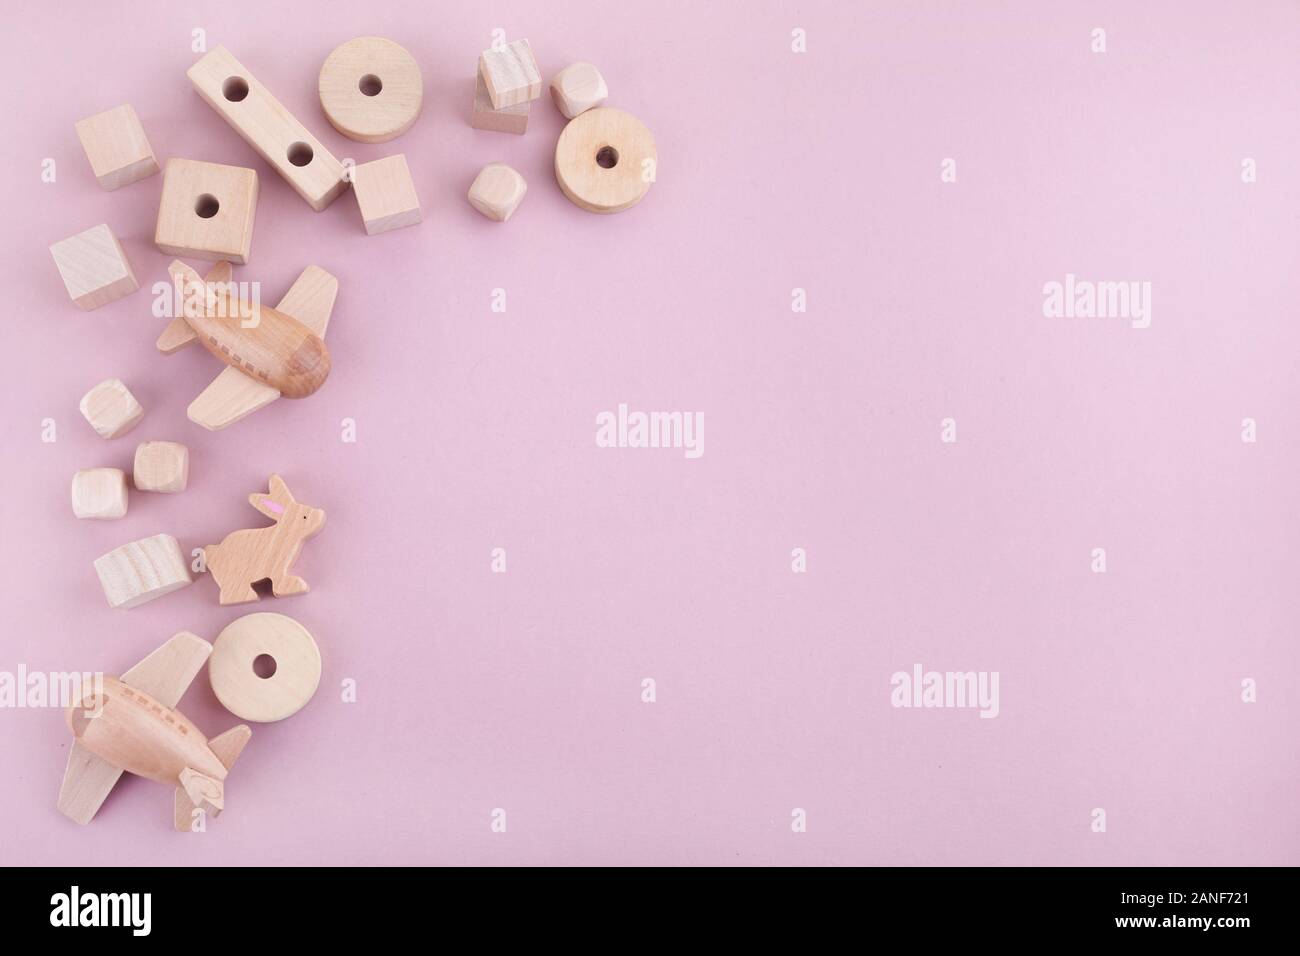 Zéro déchets. Trame d'eco jouets en bois sur fond rose. Mise à plat. Vue d'en haut Banque D'Images